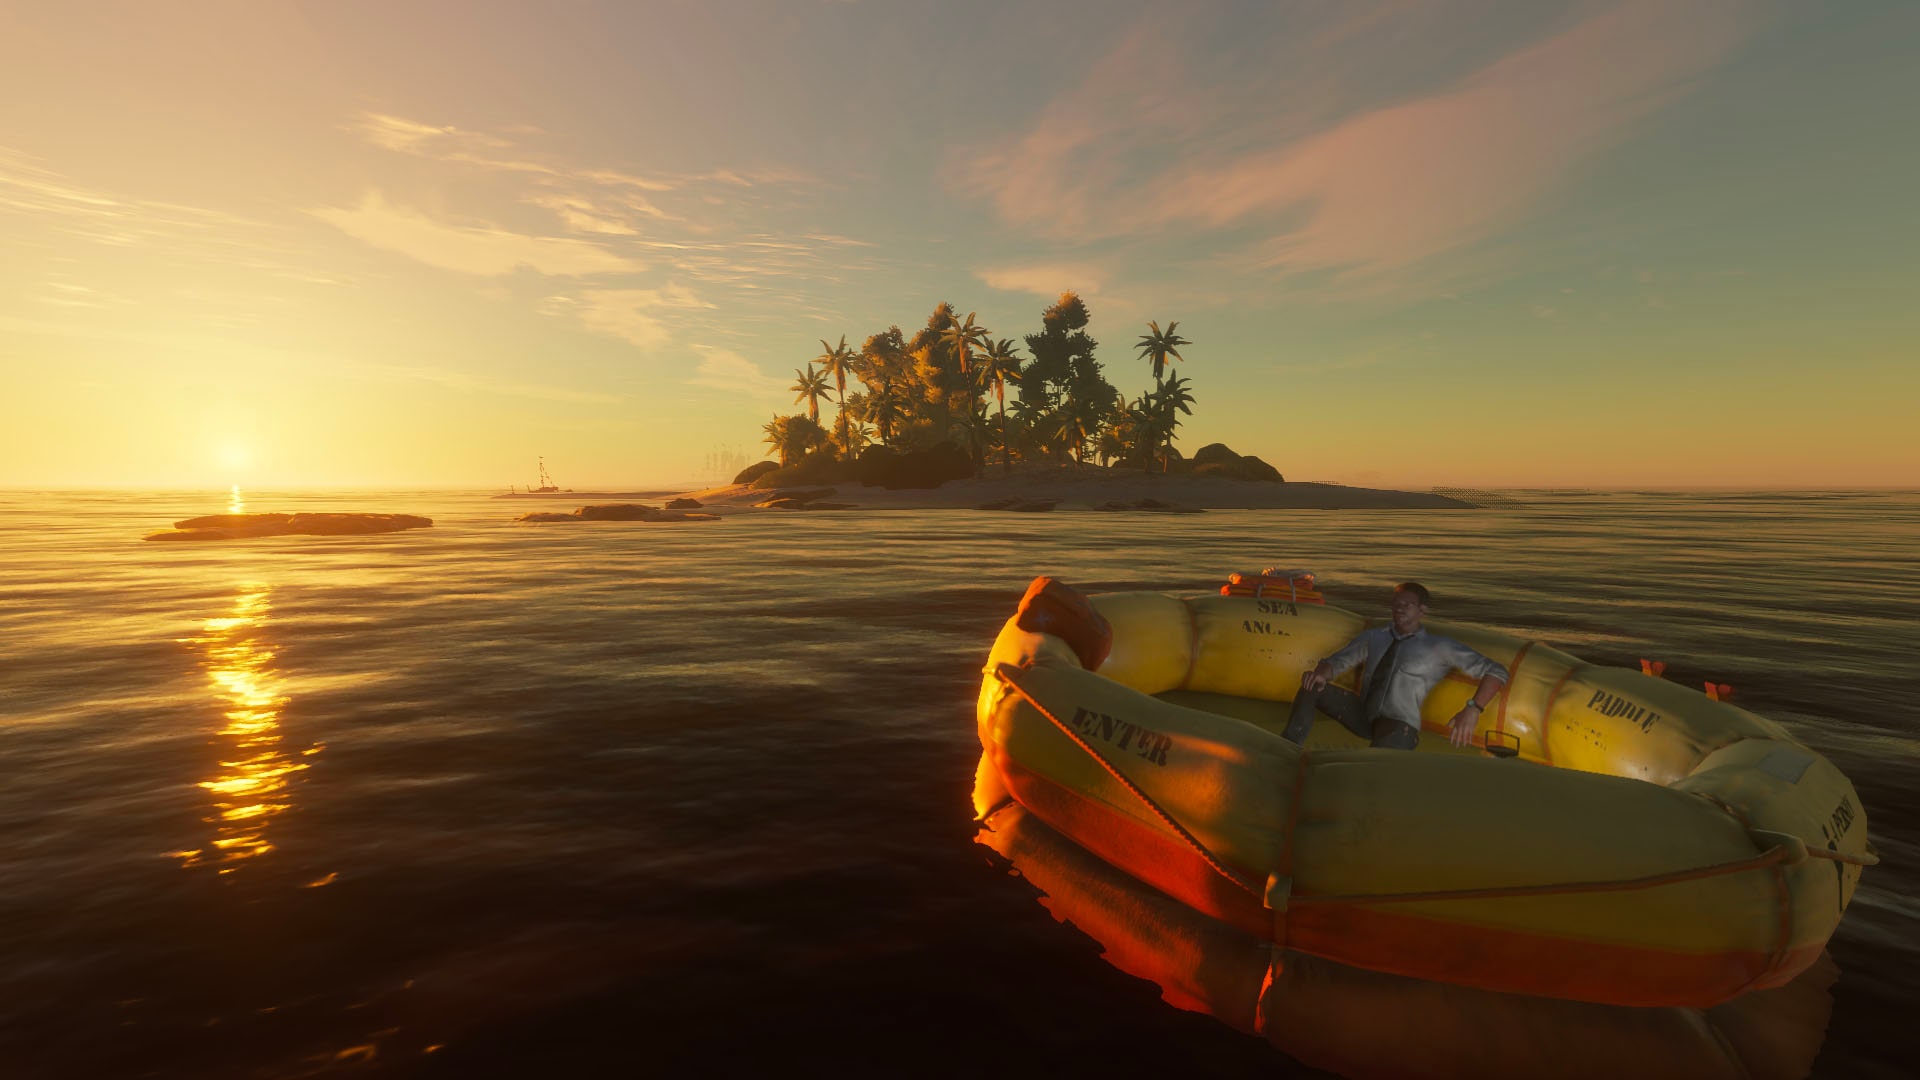 Sobreviva à ilha tropical: Stranded Deep chega amanhã ao PS4